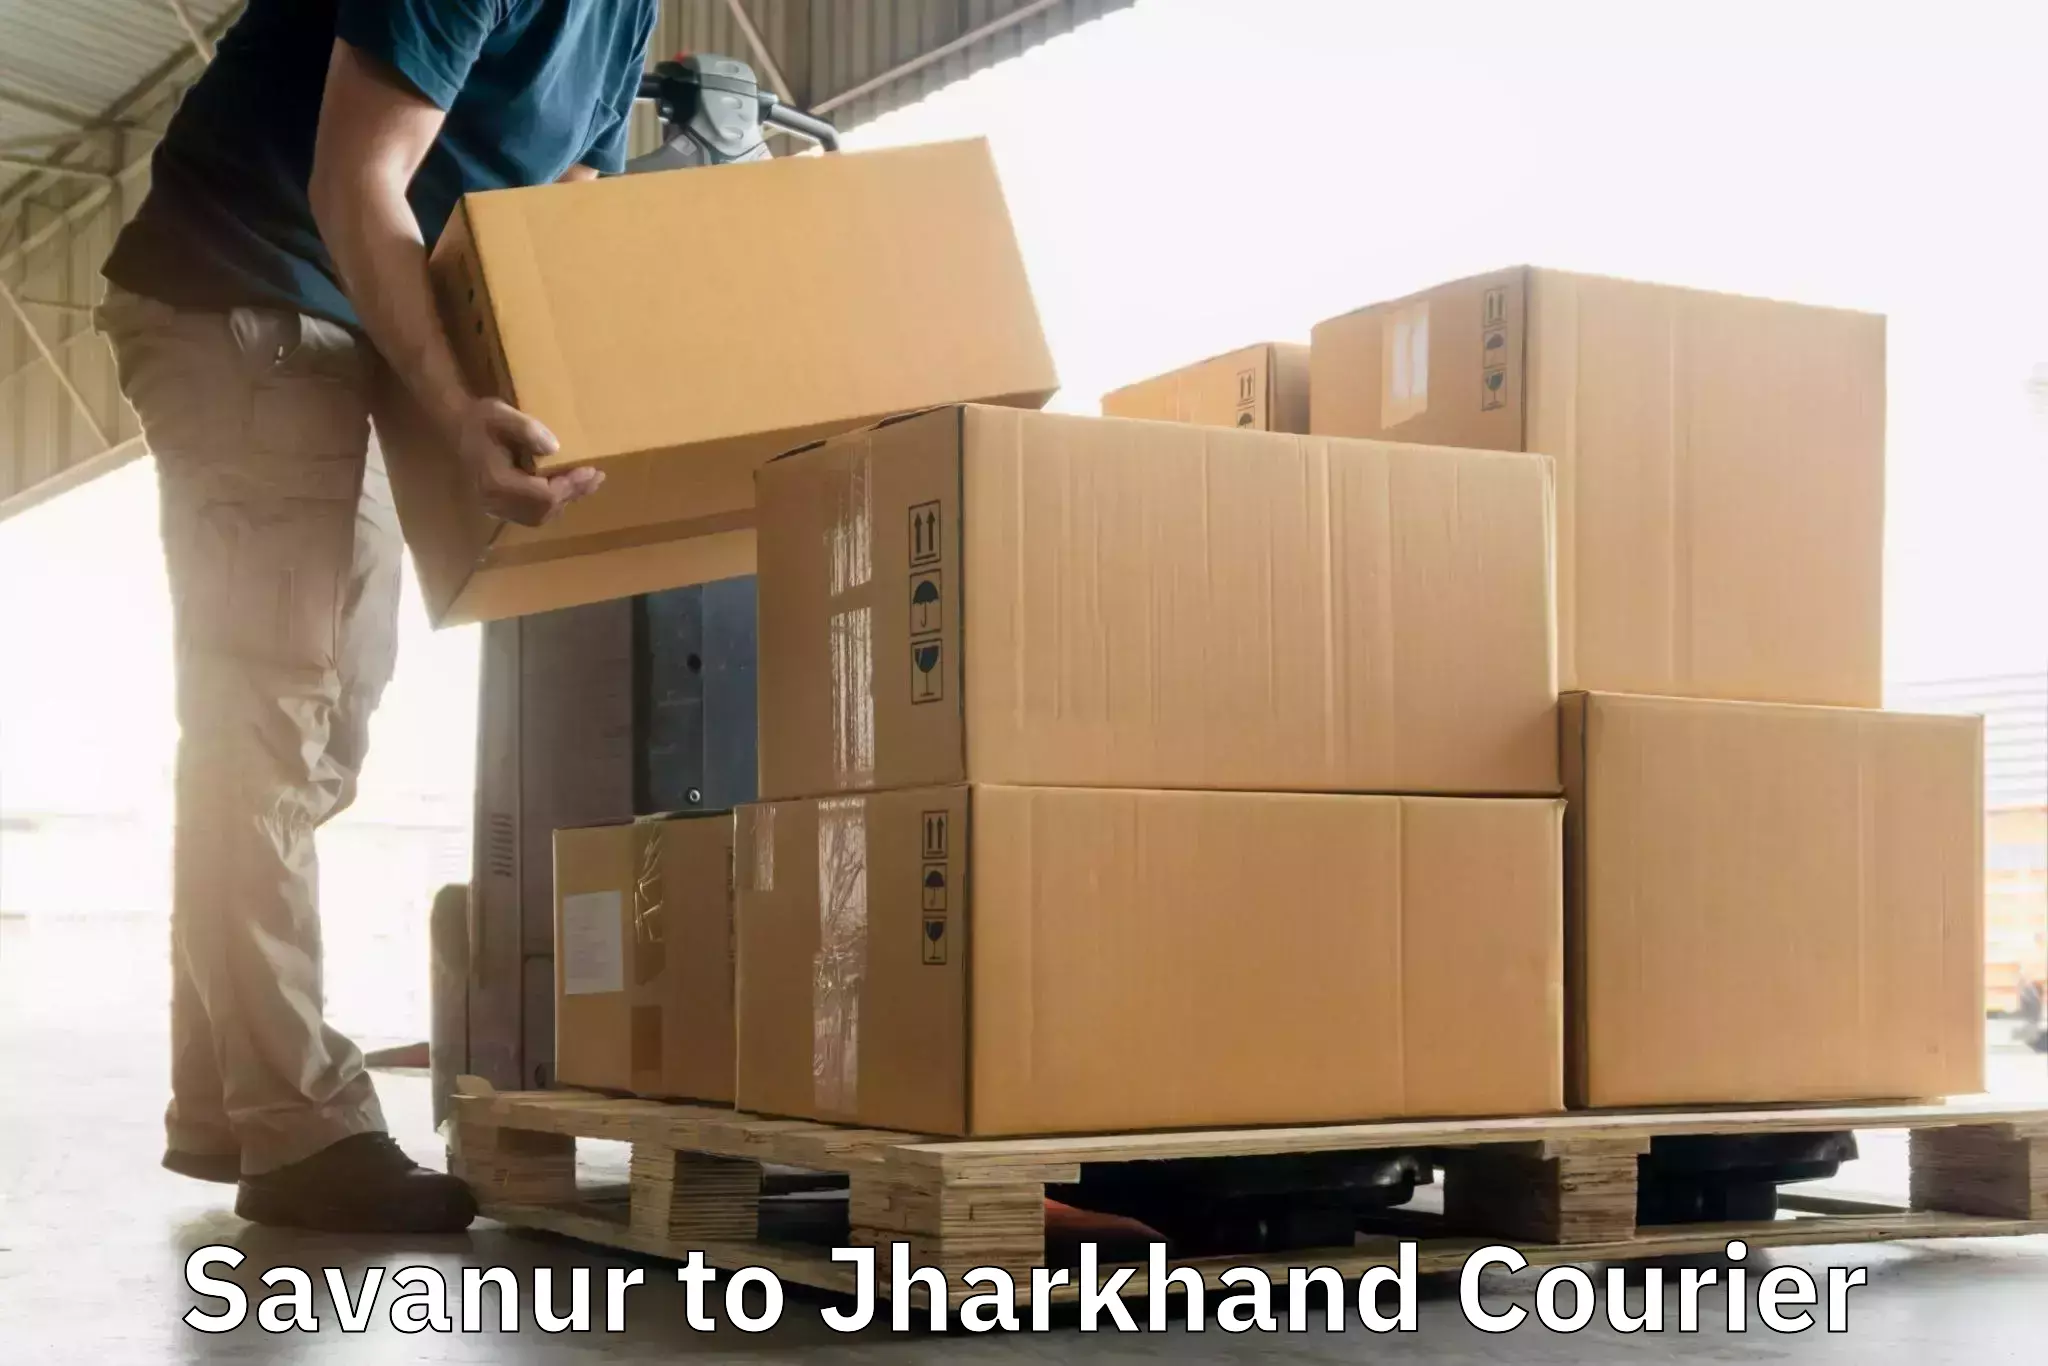 Nationwide parcel services Savanur to Itkhori